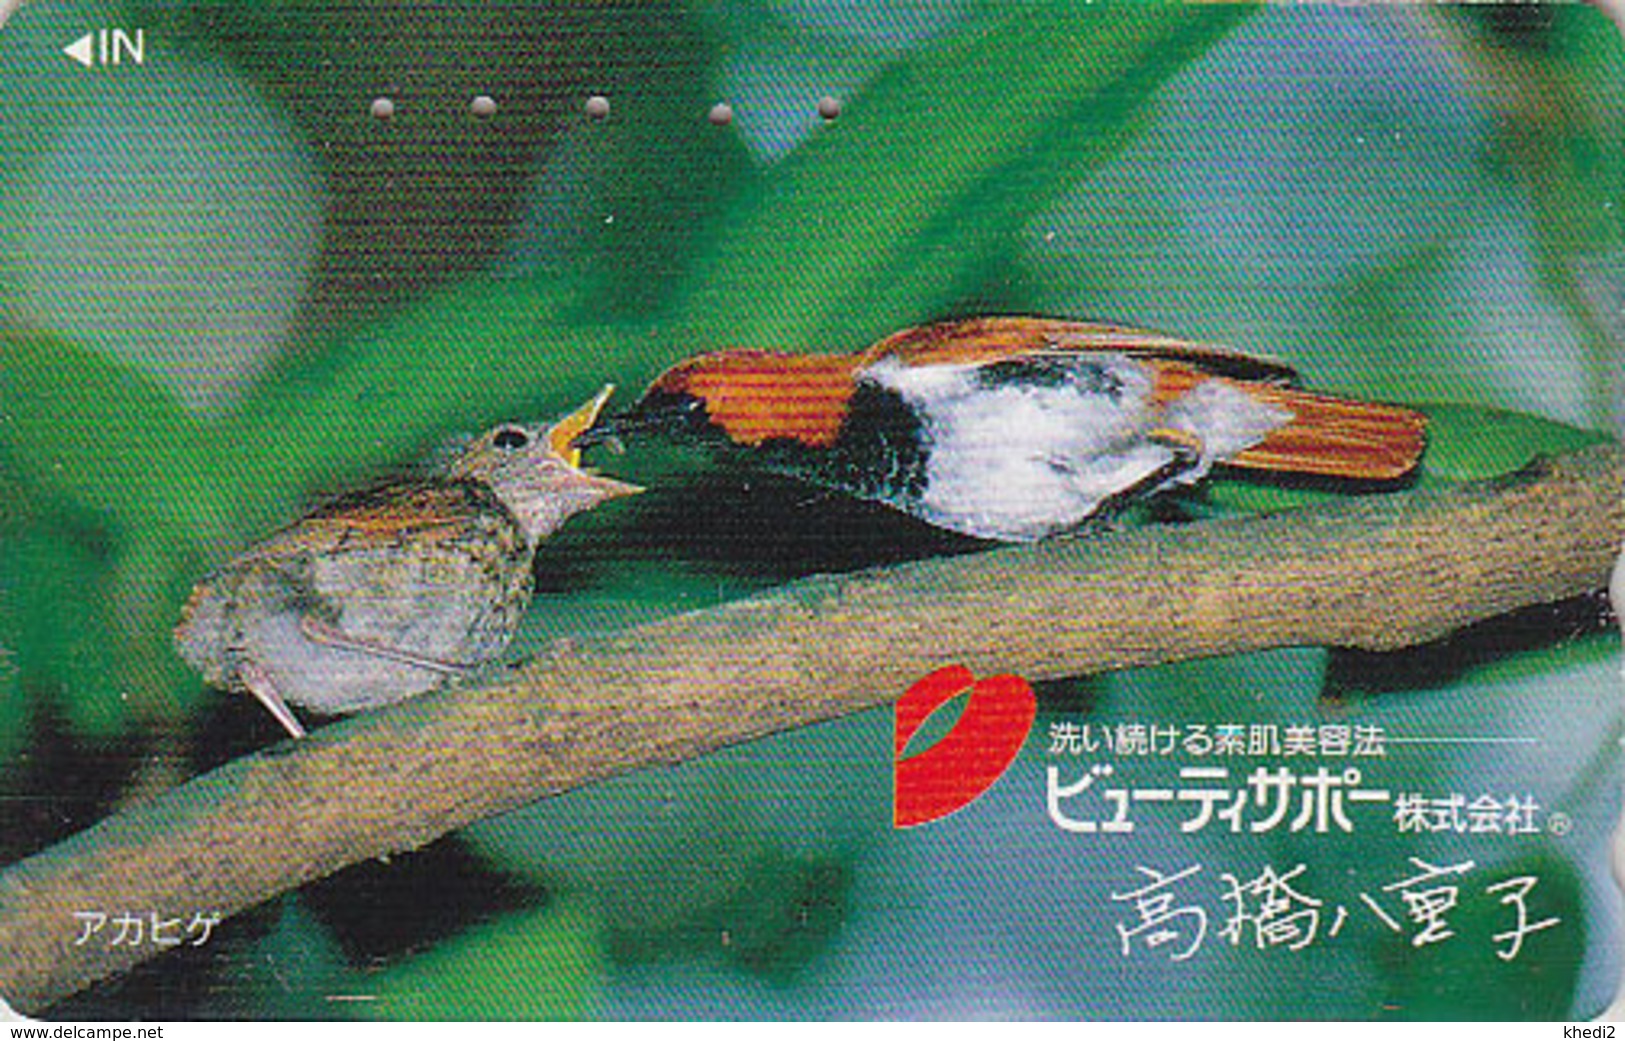 Télécarte Japon / 110-011 - Animal - OISEAU Au Nid - SONG BIRD Feeding Japan Phonecard - BE 4481 - Pájaros Cantores (Passeri)